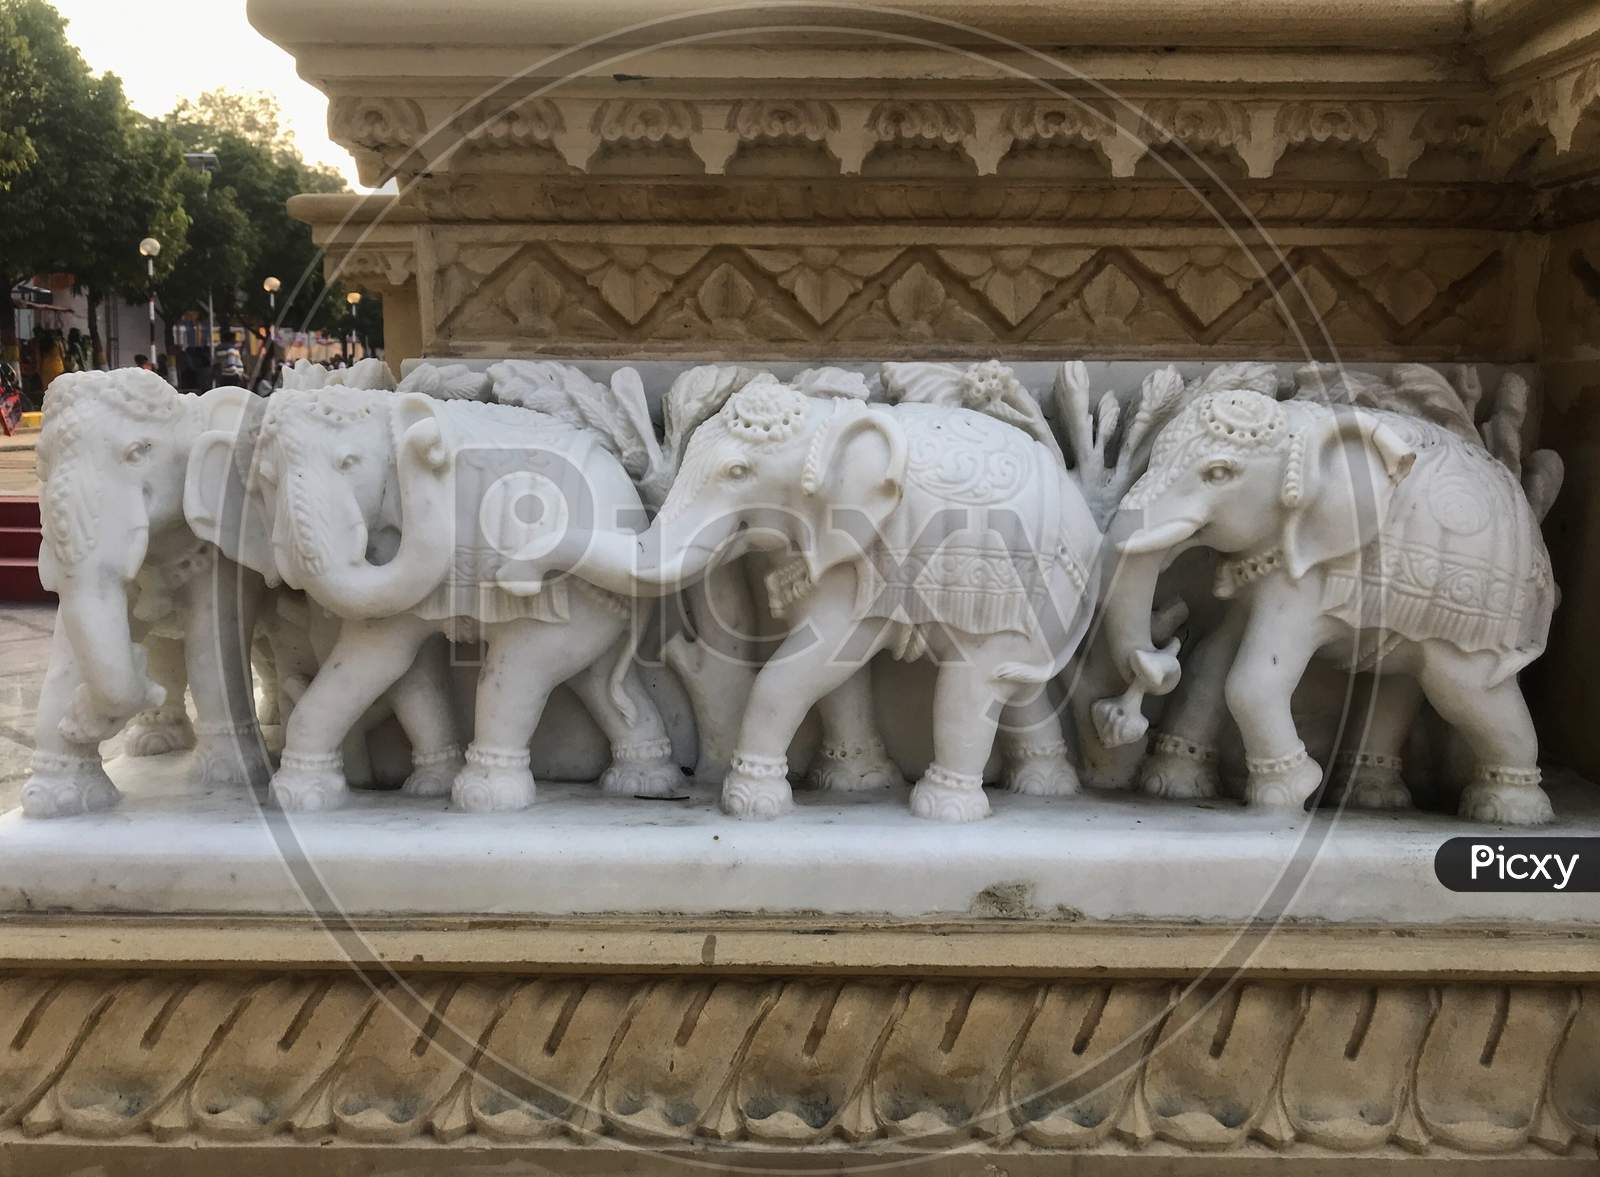 Jabalpur, Madhya Pradesh/India : November 23, 2019 - Small Elephants at Pisanhari Ki Madhiya, Jabalpur